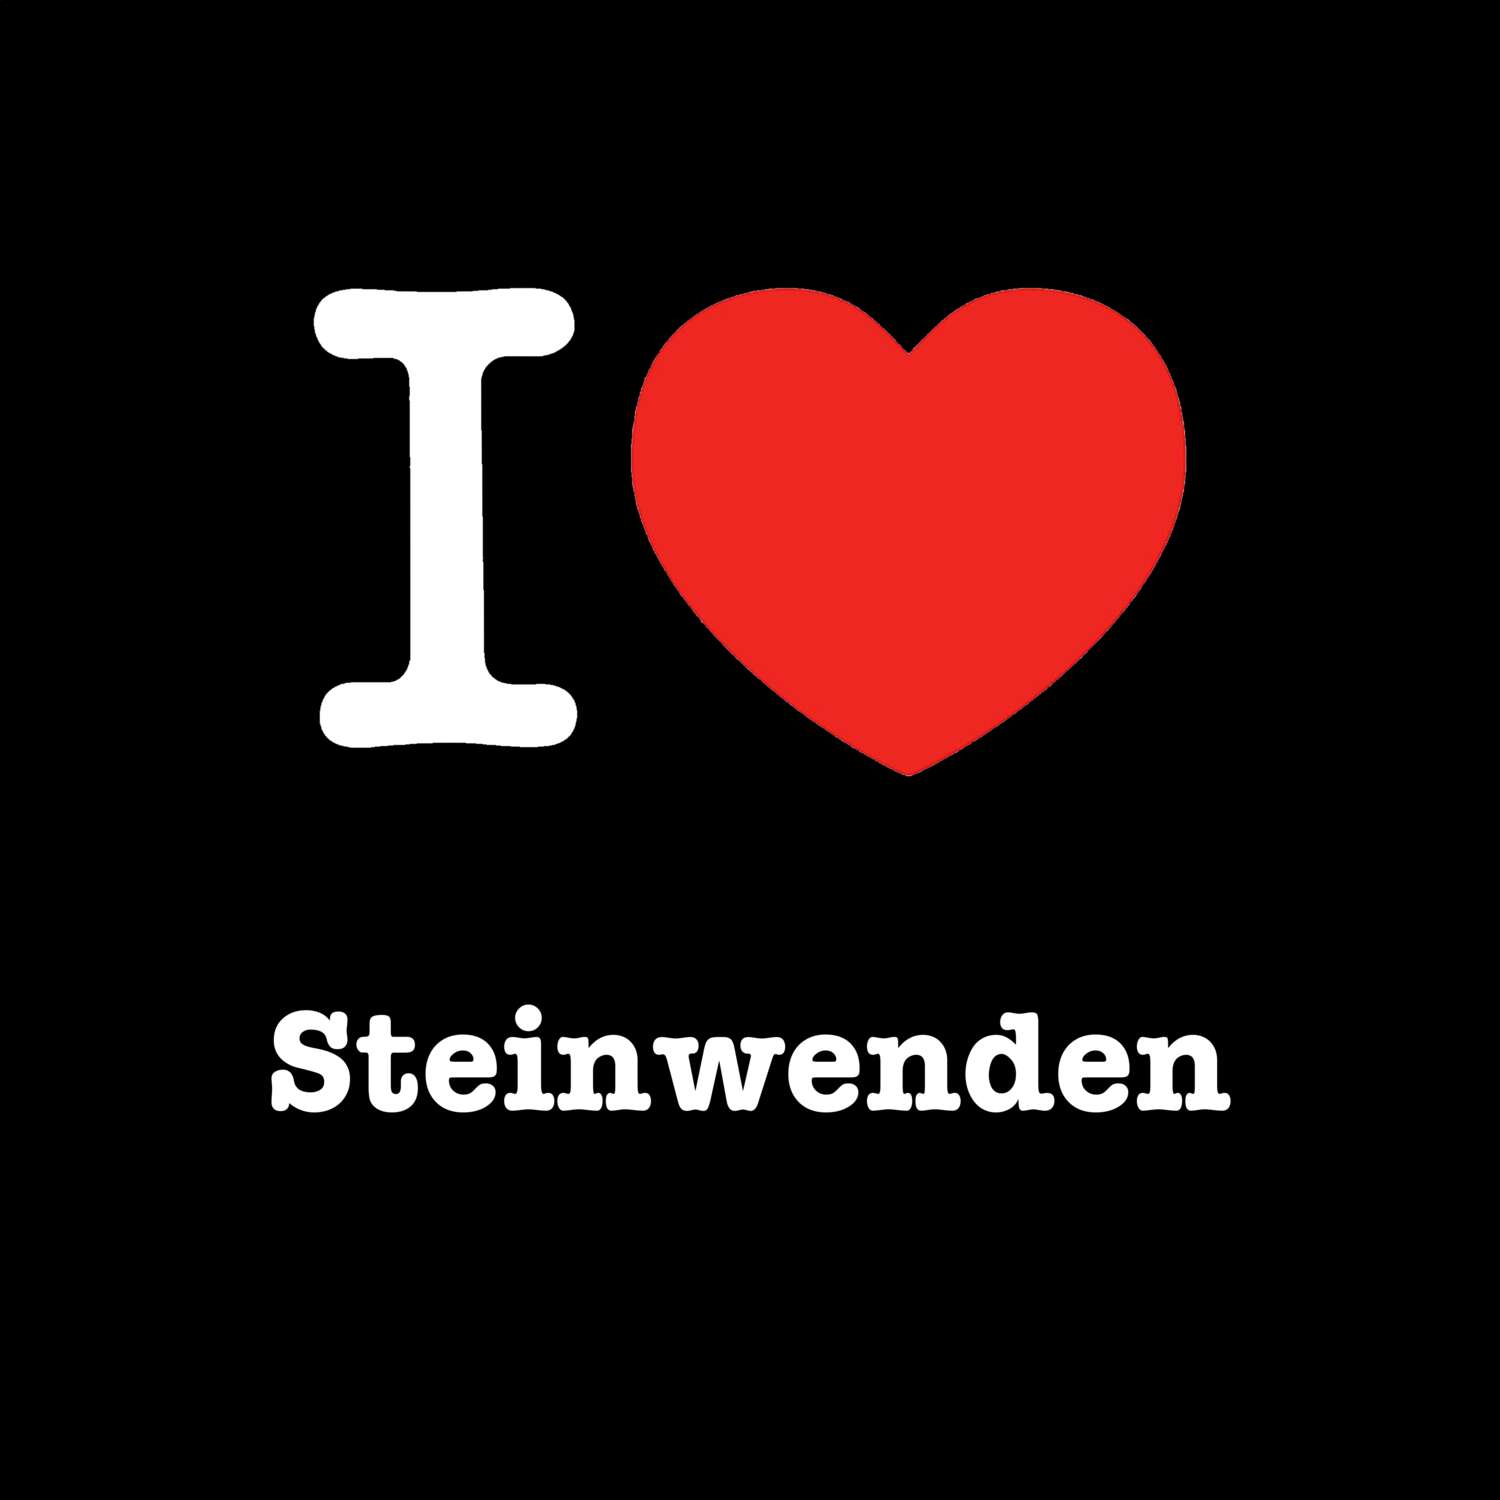 Steinwenden T-Shirt »I love«